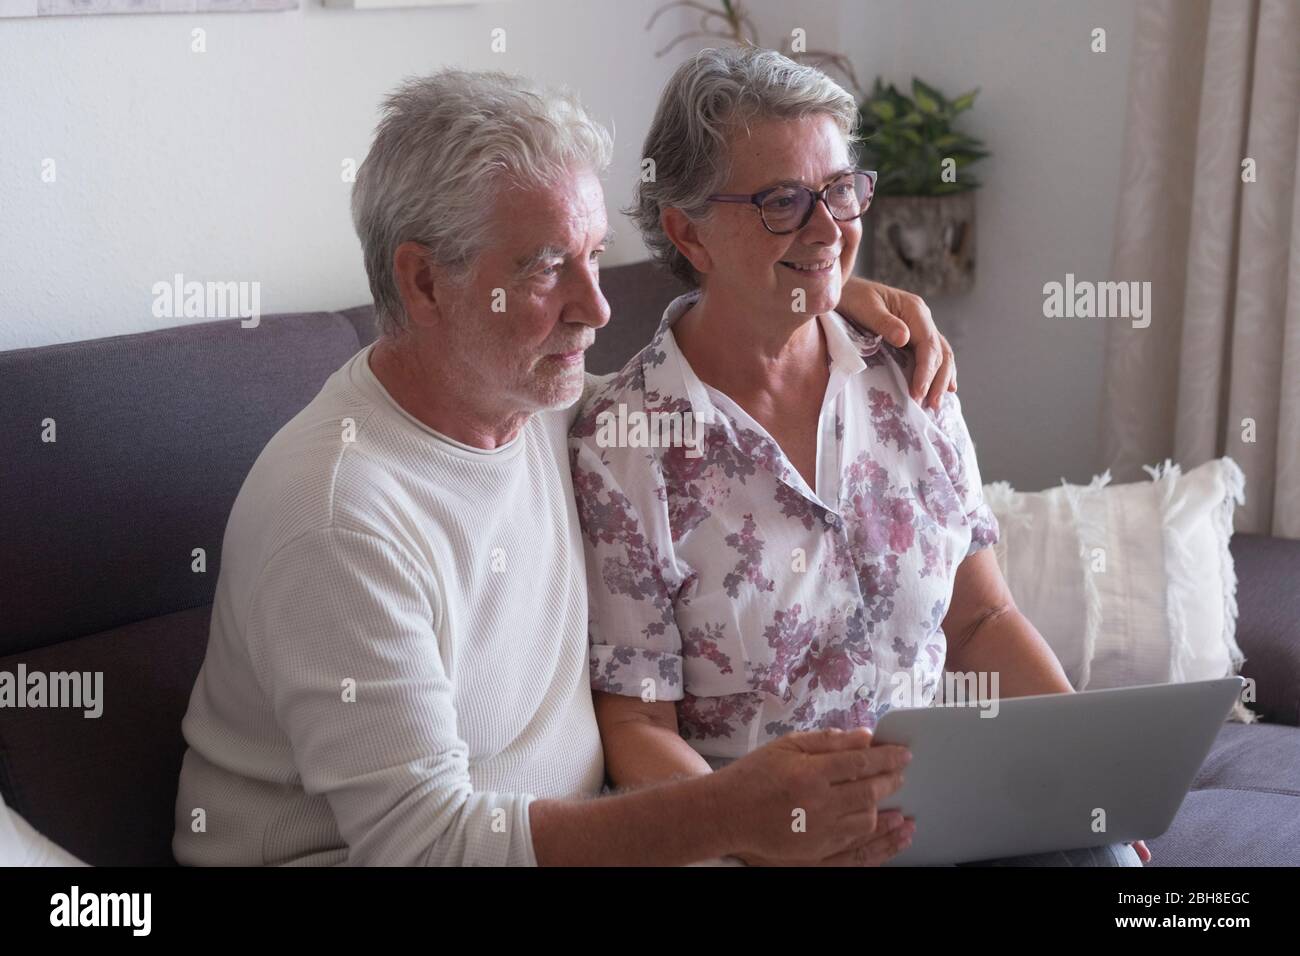 Ältere Paare zu Hause surfen auf Laptop-Computer - Frau lächelnd und Mann ernst sowohl auf der Suche nach etwas im Internet und verwenden Sie ein Notebook setzen Sie sich auf das Sofa Stockfoto